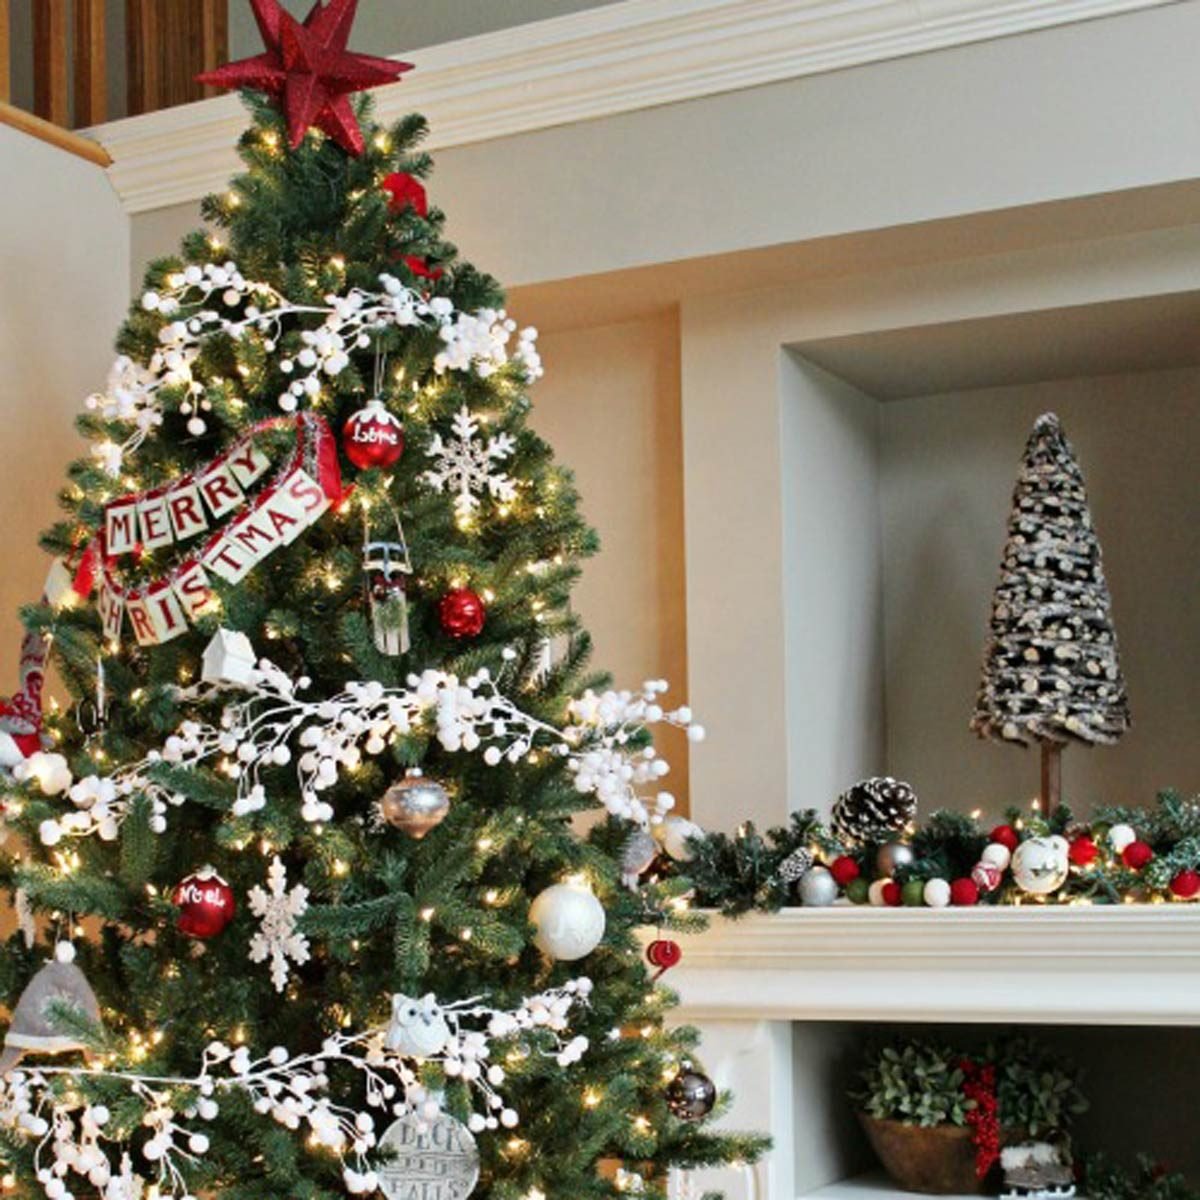 χριστουγεννιάτικο δέντρο με στολισμό